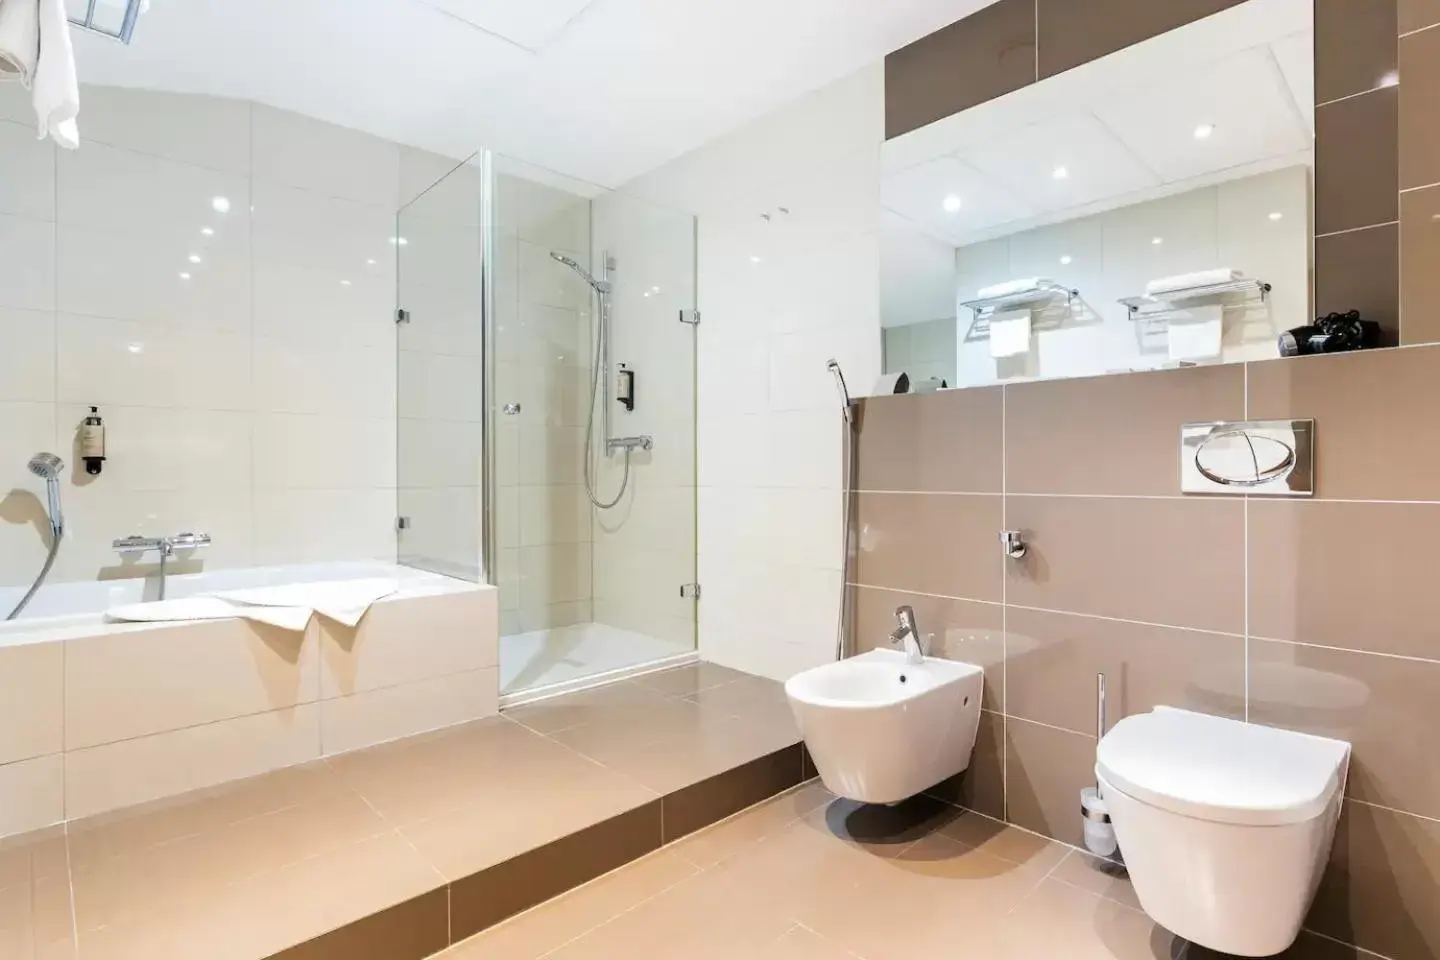 Public Bath, Bathroom in Roset Hotel & Residence